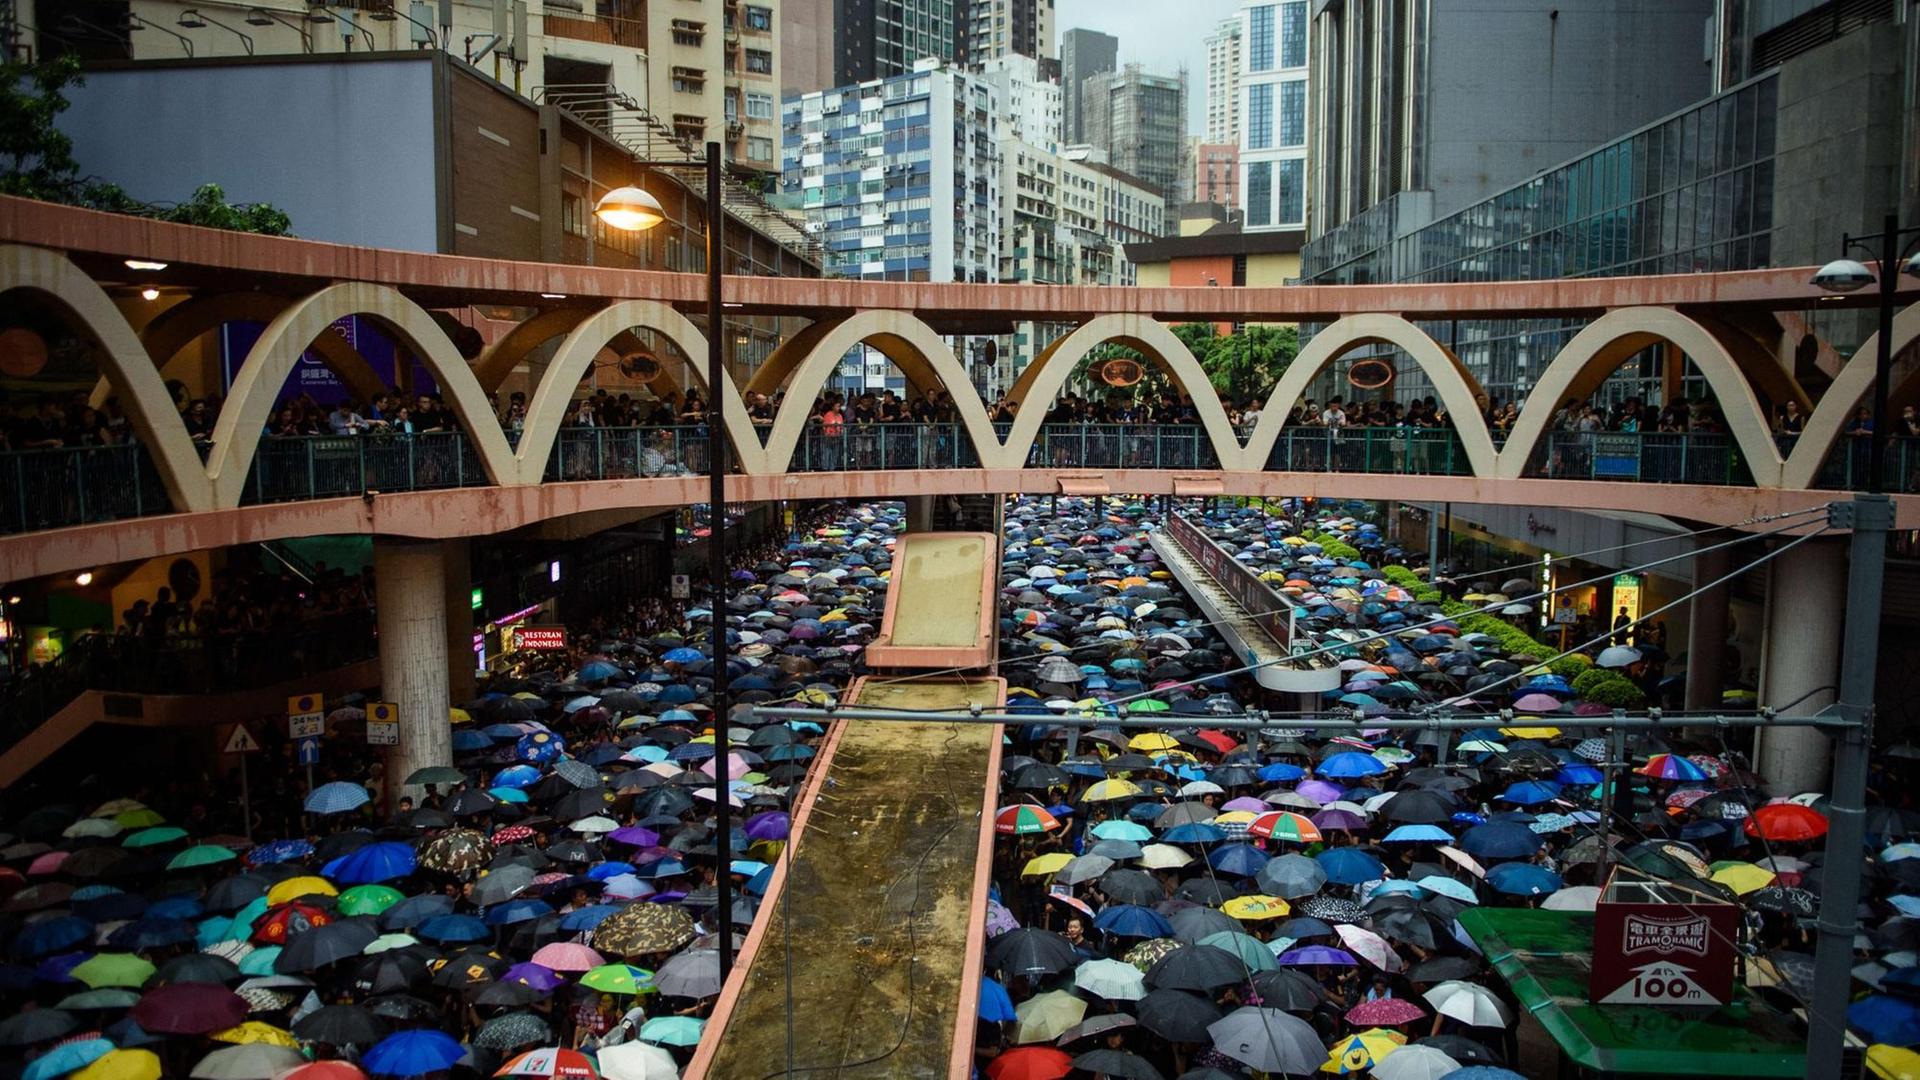 Demonstranten schützen sich mit Schirmen vor dem anhaltenden Regen, die gleichzeitig ein Symbol für den Protest sind.